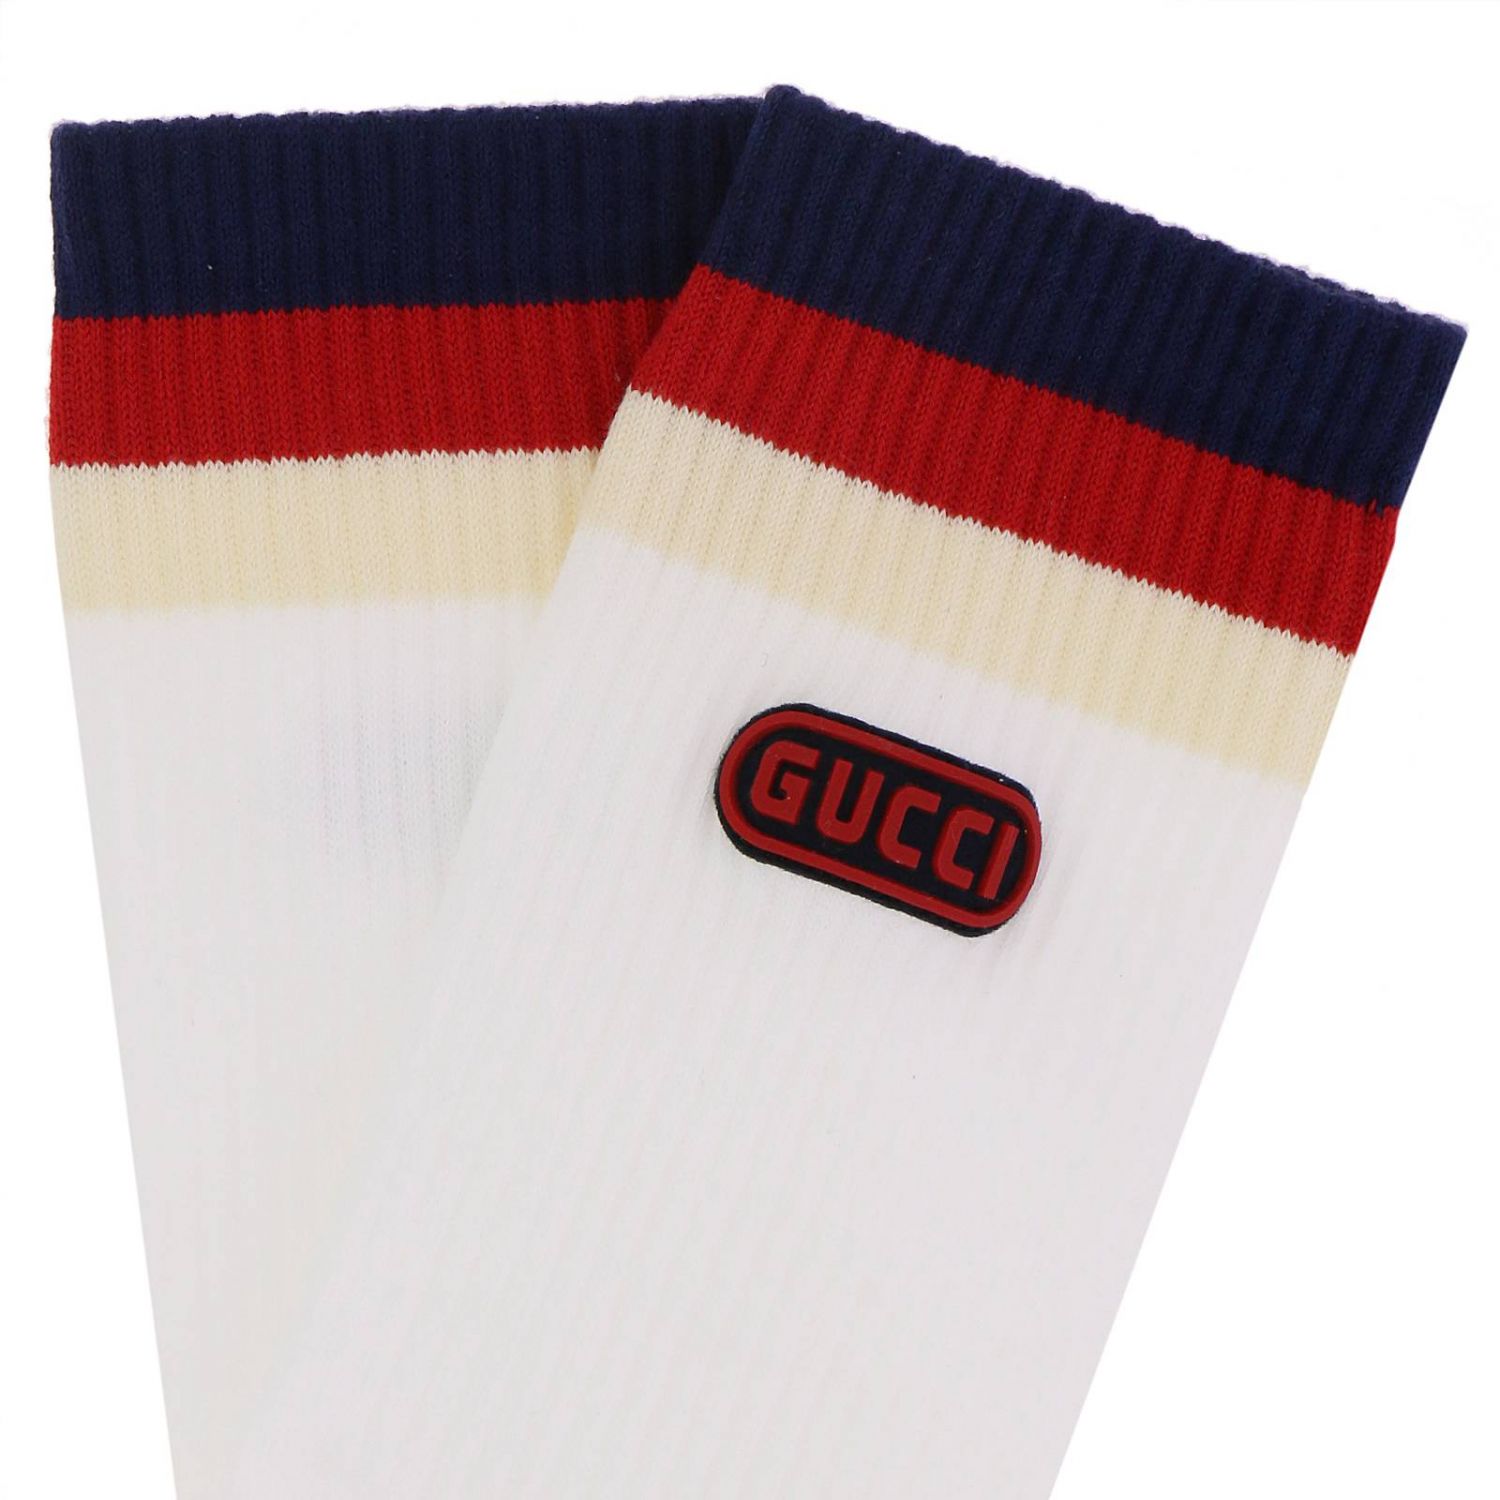 Socks Gucci Men | Socks Men Gucci 526316 4G383 Giglio EN